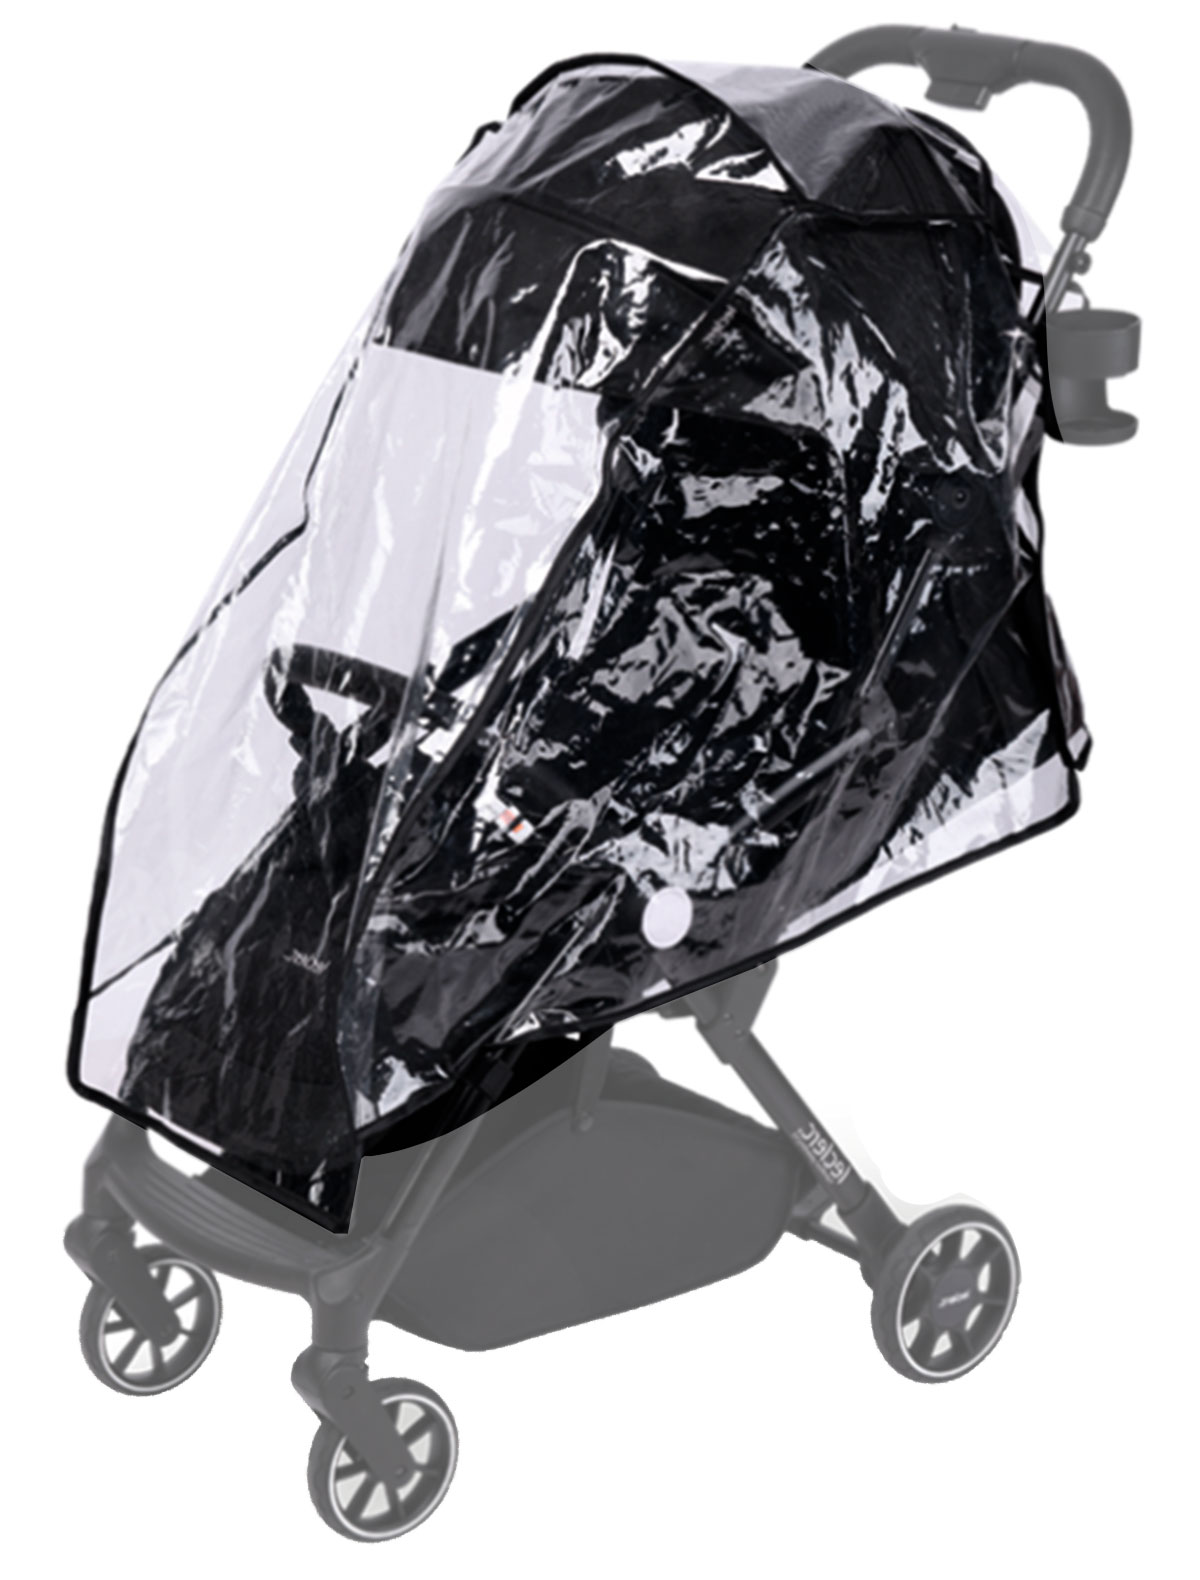 Аксессуар для коляски Leclerc baby leclerc babys защита от ветра для коляски